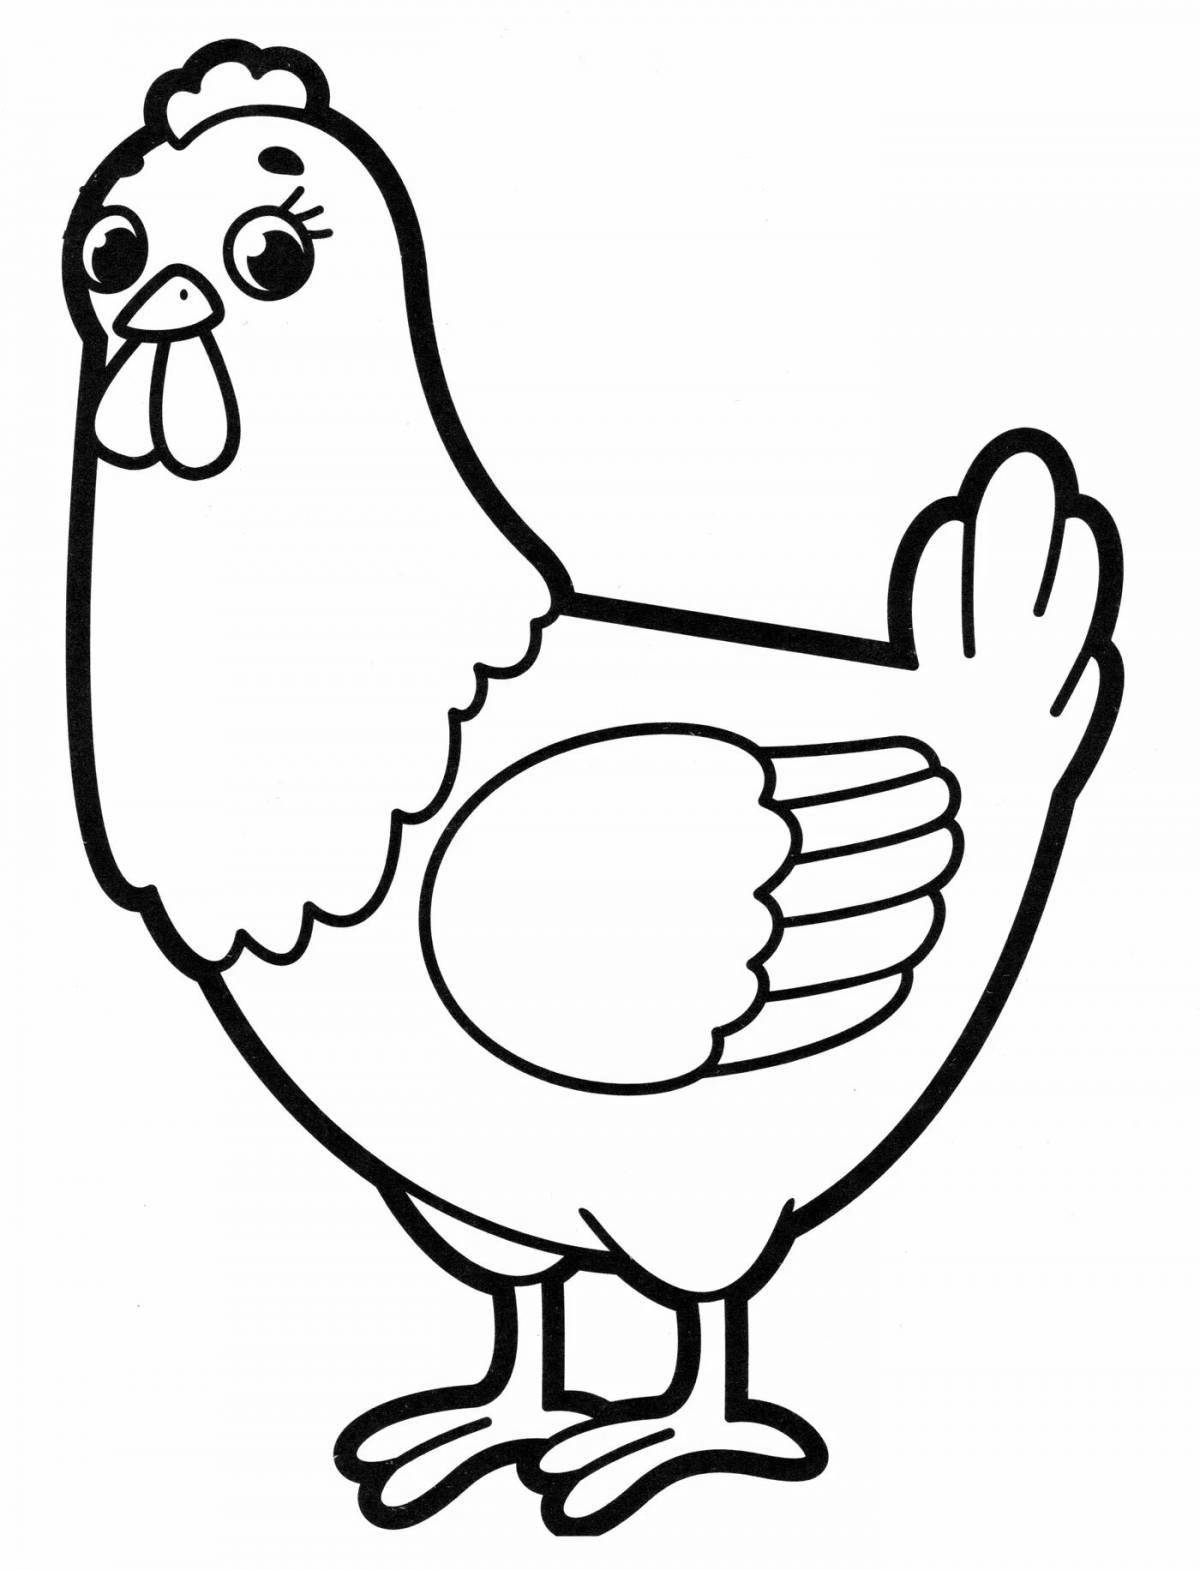 Сладкий рисунок курицы для детей